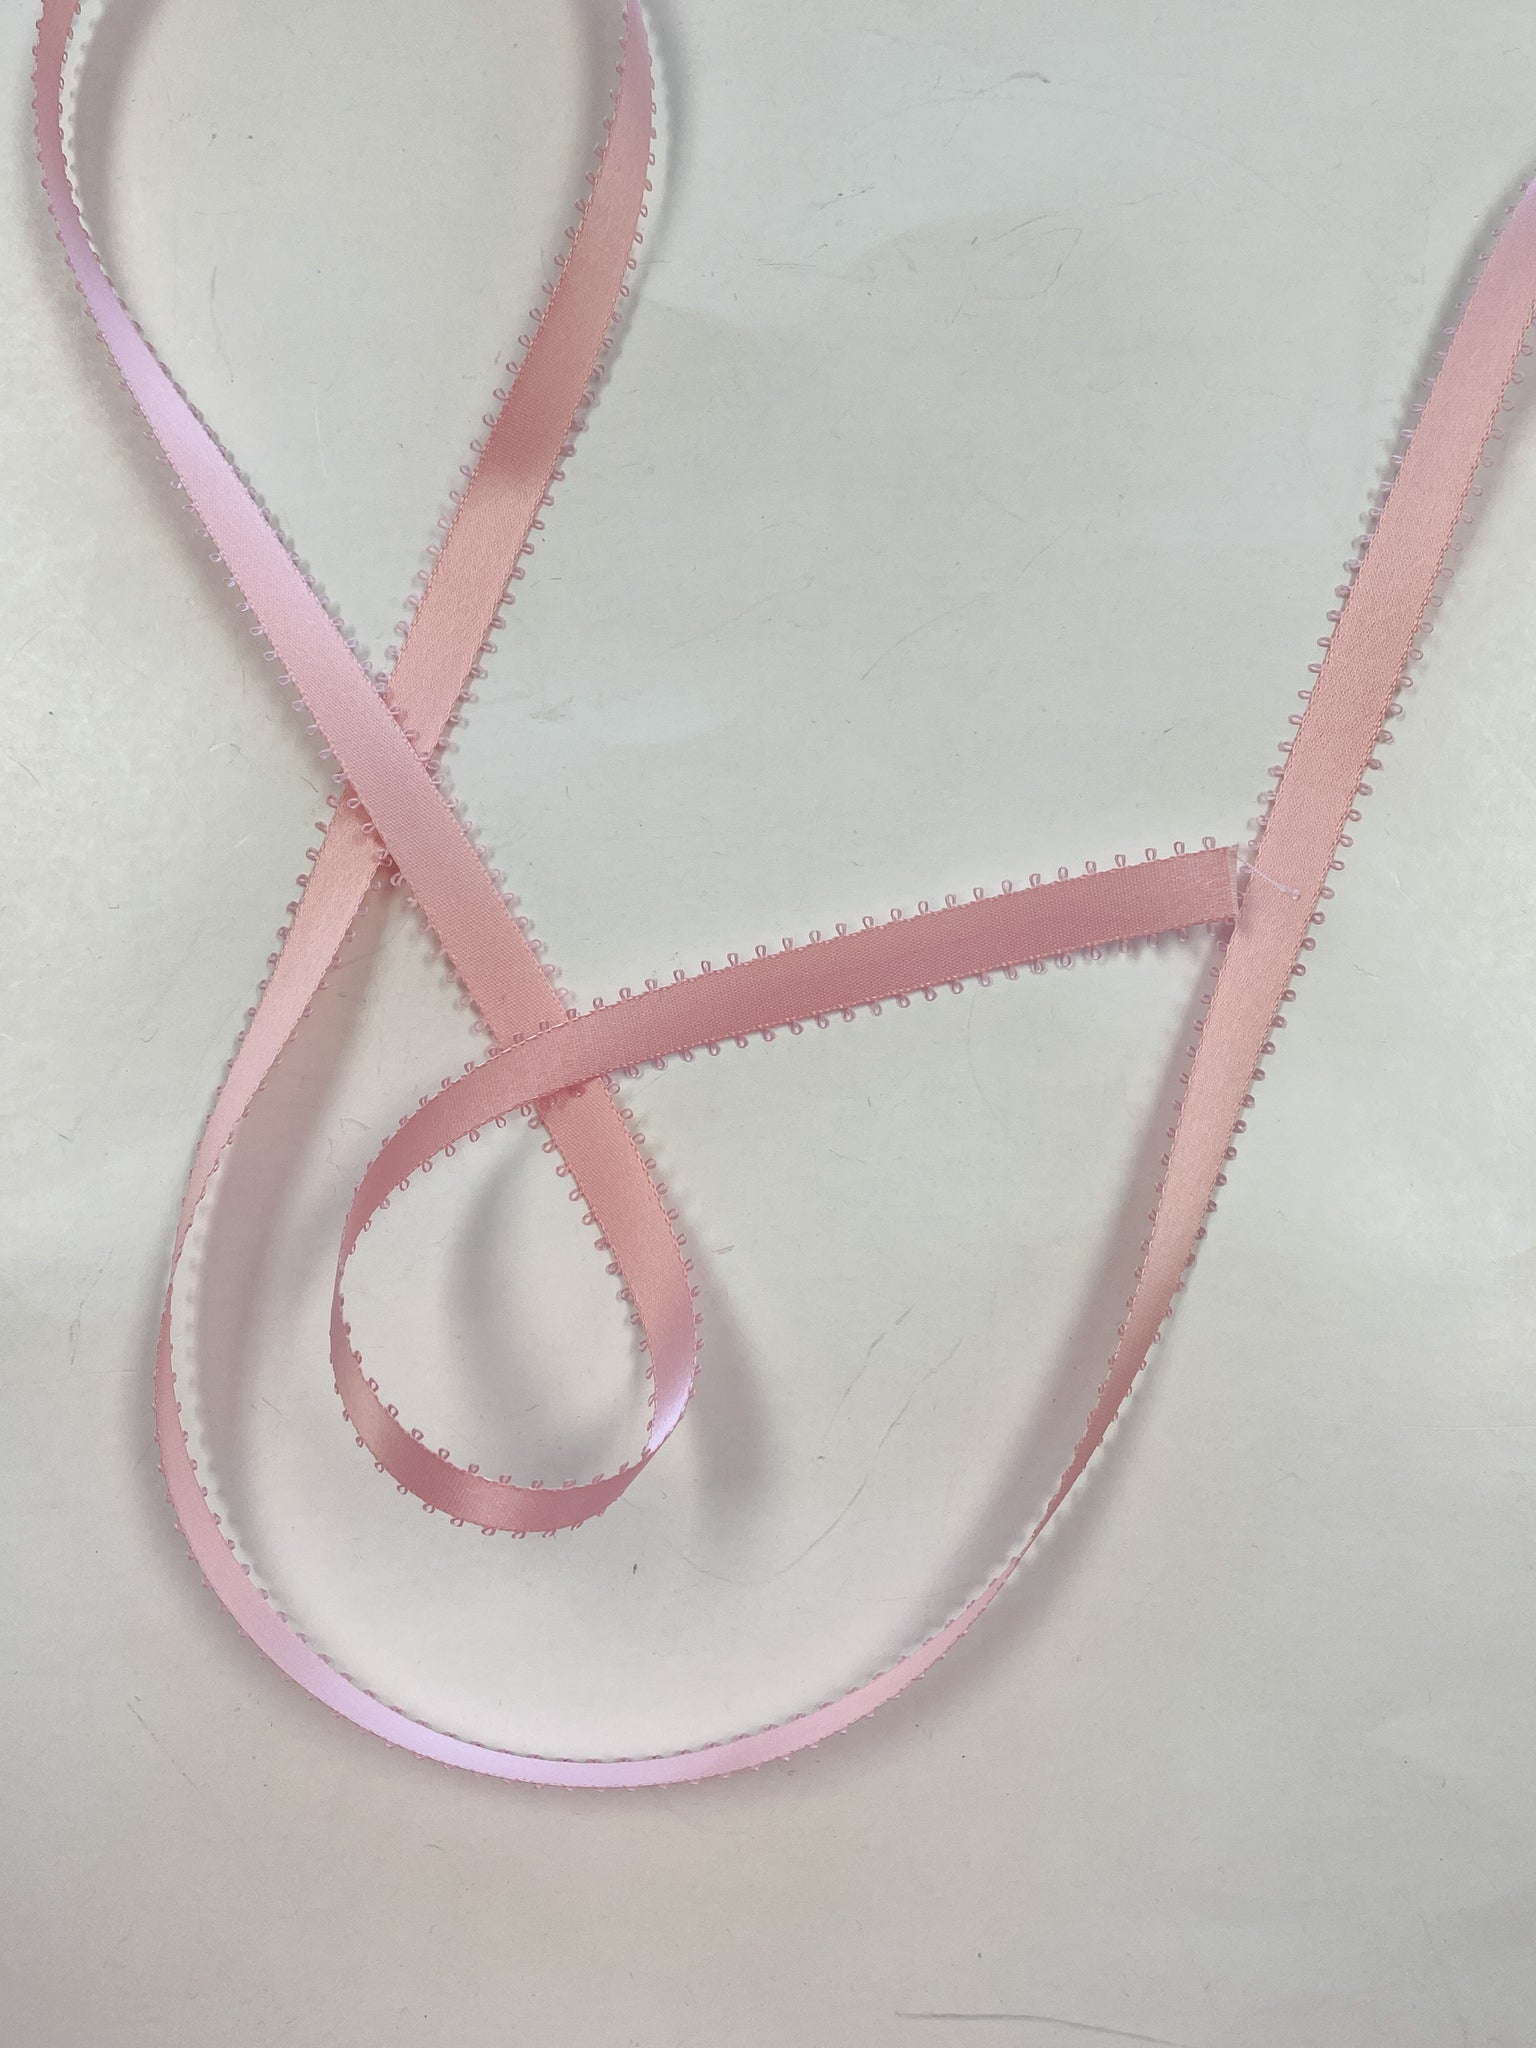 Rayon Picot Double Satin Ribbon- Pink